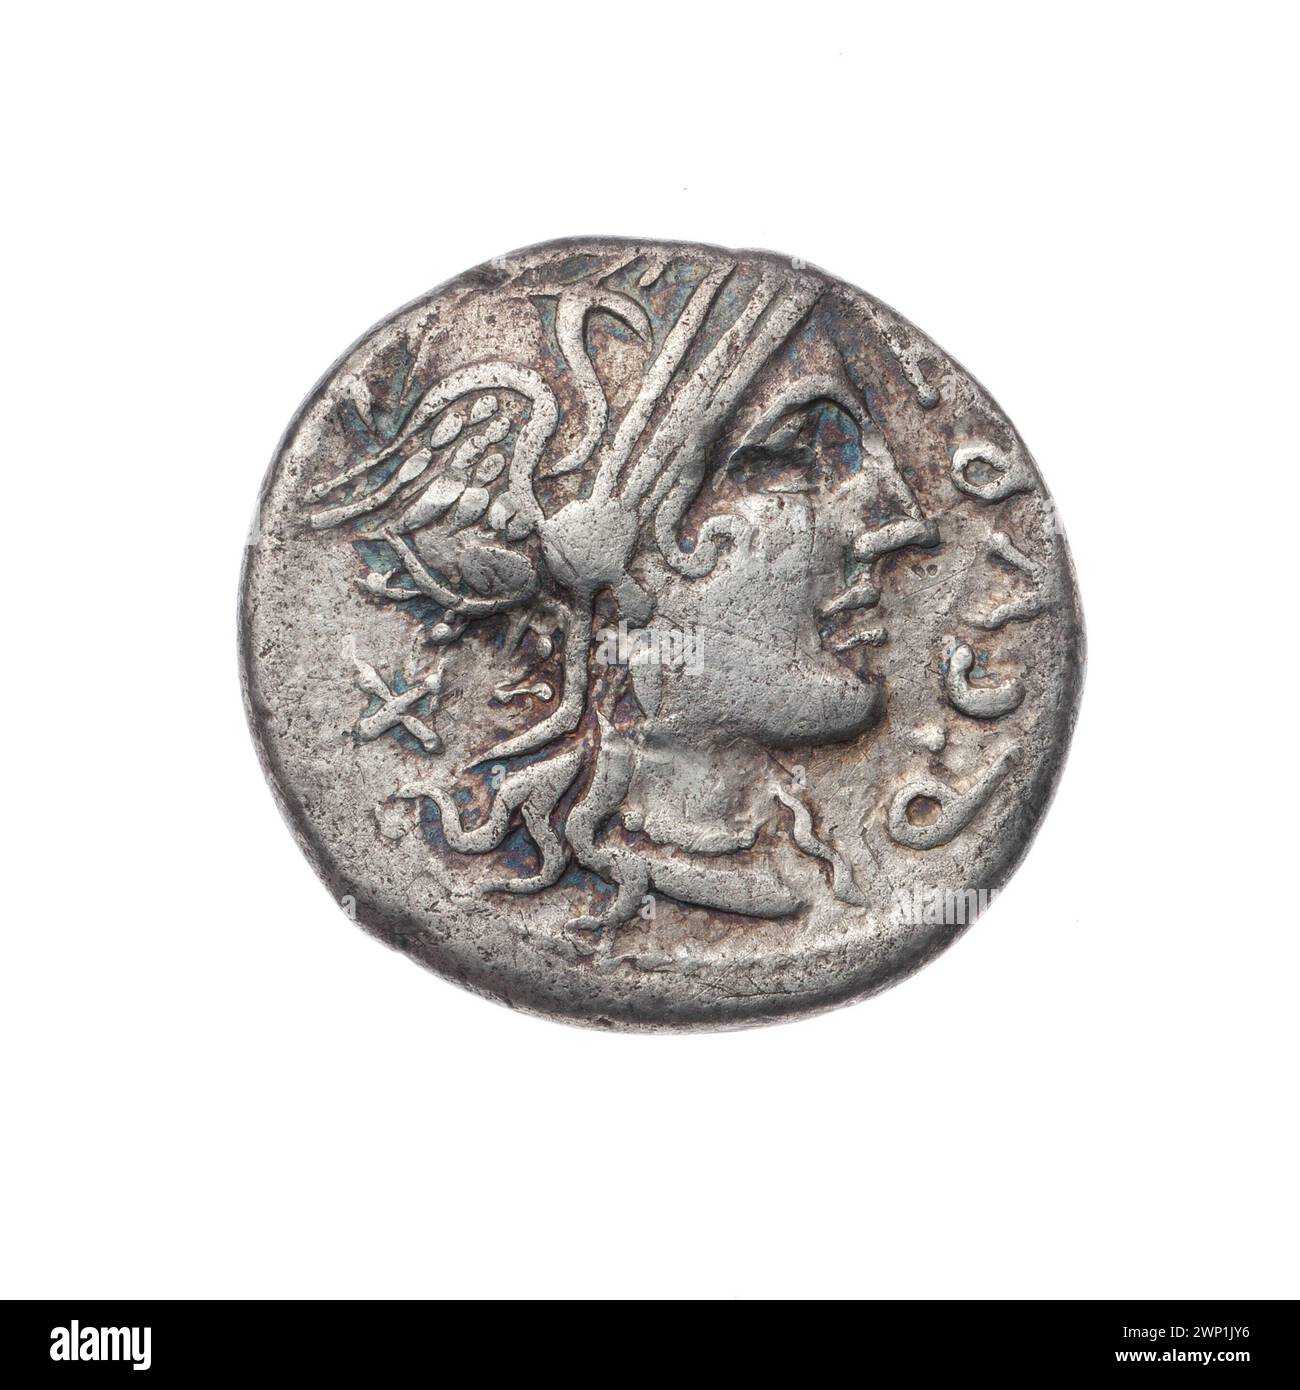 Denar; Curtius, Q. (fl. 116-115 n. Chr.), Silanus, M. (FL. 116-115 n. Chr.); 116-115 v. Chr. (116-00-00-115-00); Jupiter (mitol.), Jupiter auf einem Platz (iconogr.), Roma (mitol.), Schrift (Attribut), Geschenk (Provenienz), Kopf der Roma in einem Helm (iconogr.), Helme, Quadrigas, Pferde Lightning (Attribut ) Stockfoto